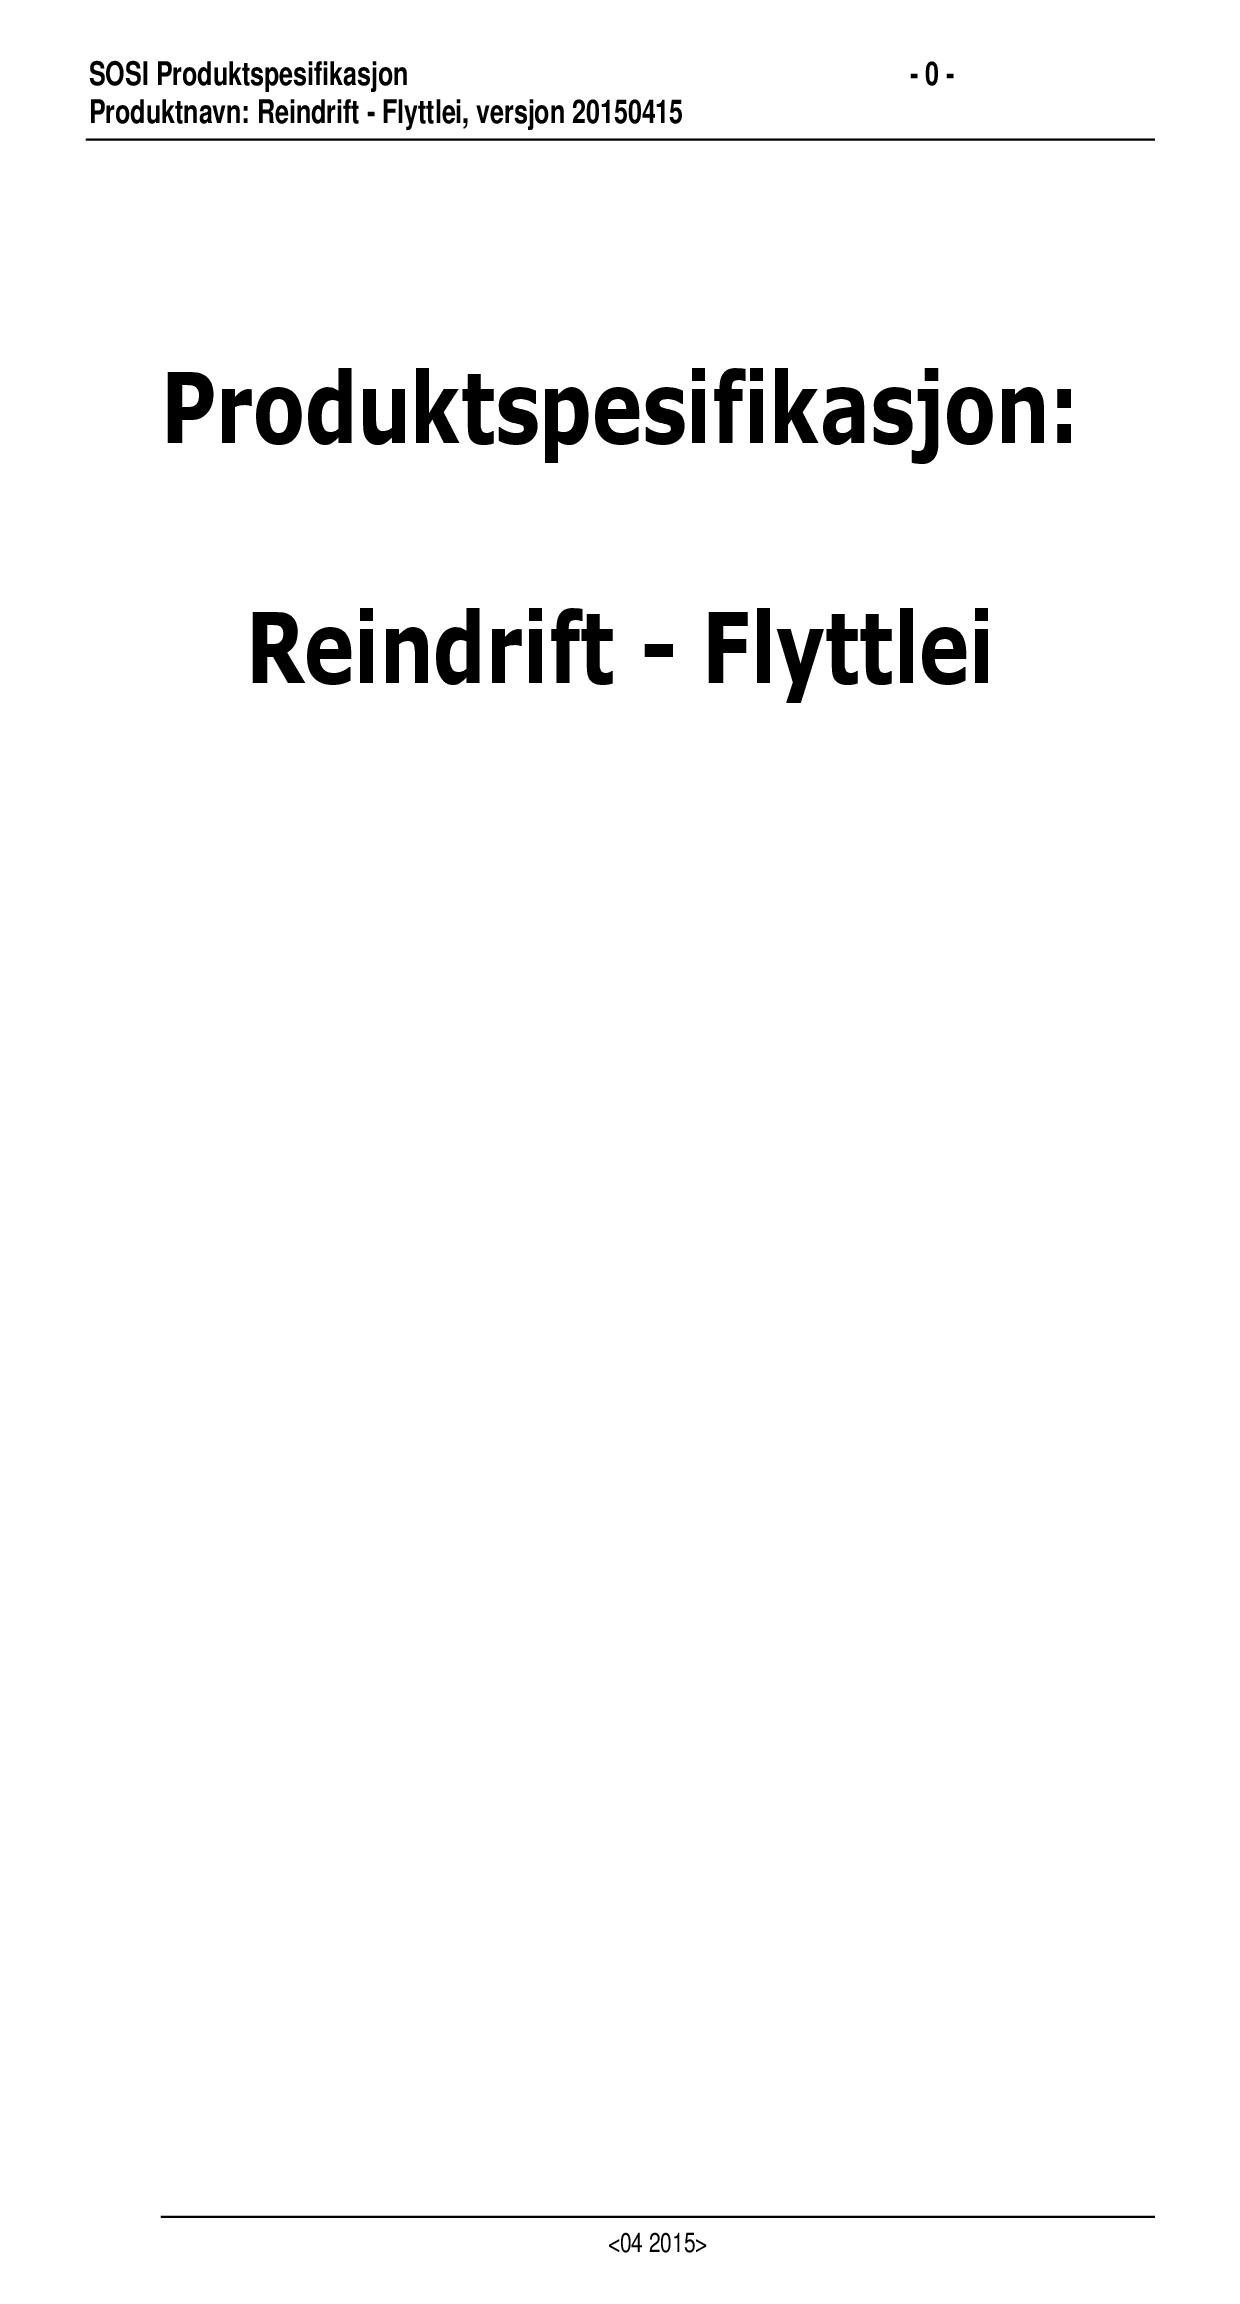 Reindrift - Flyttlei